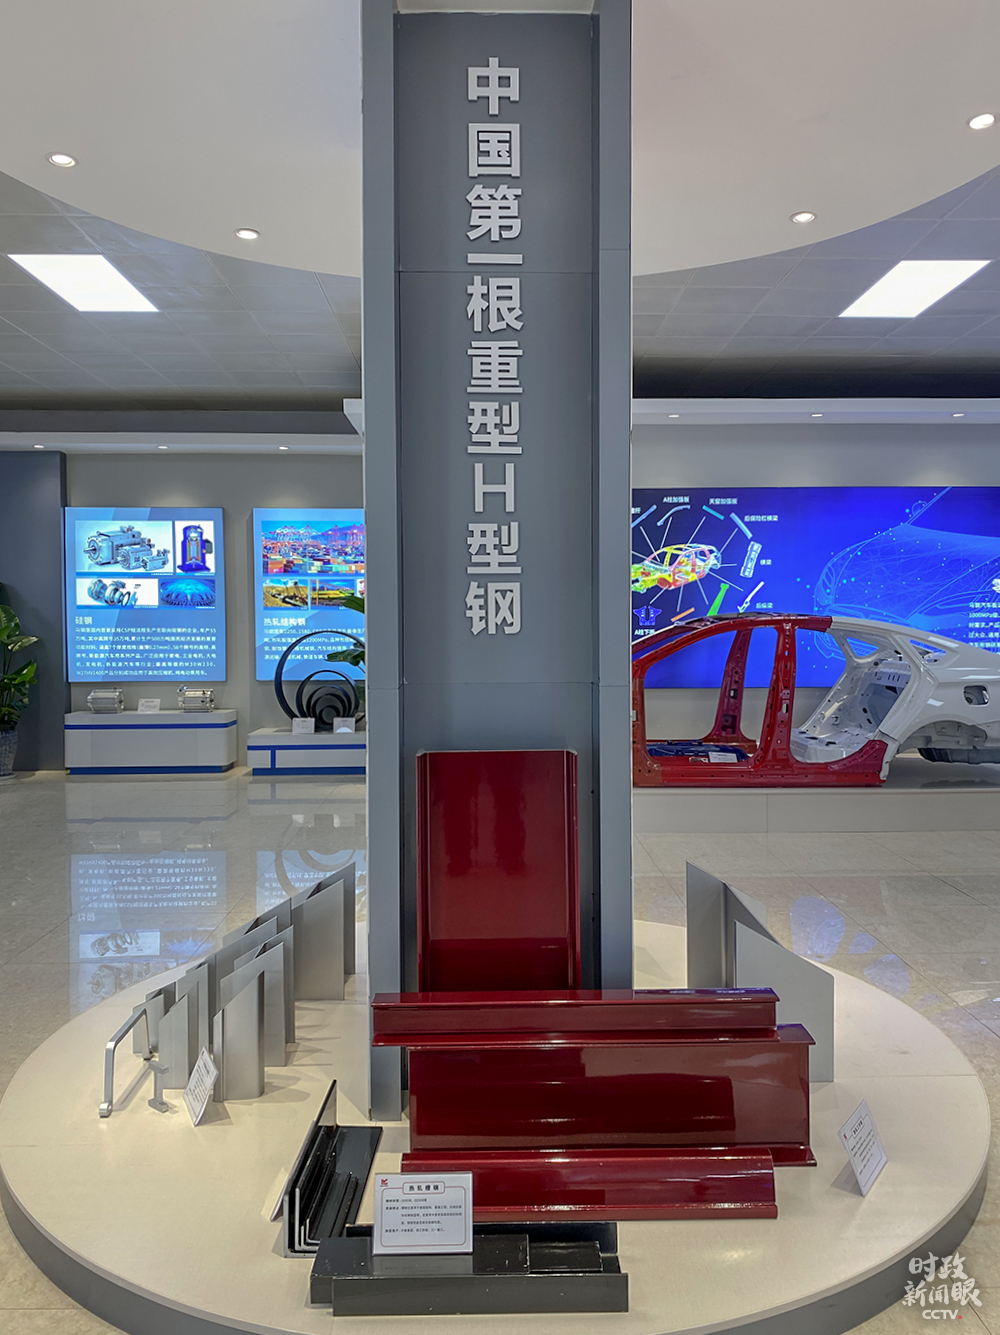 馬鋼可生產世界最大B最厚的重型熱軋H型鋼A屬於國內首創C]總台央視記者李輝拍攝^